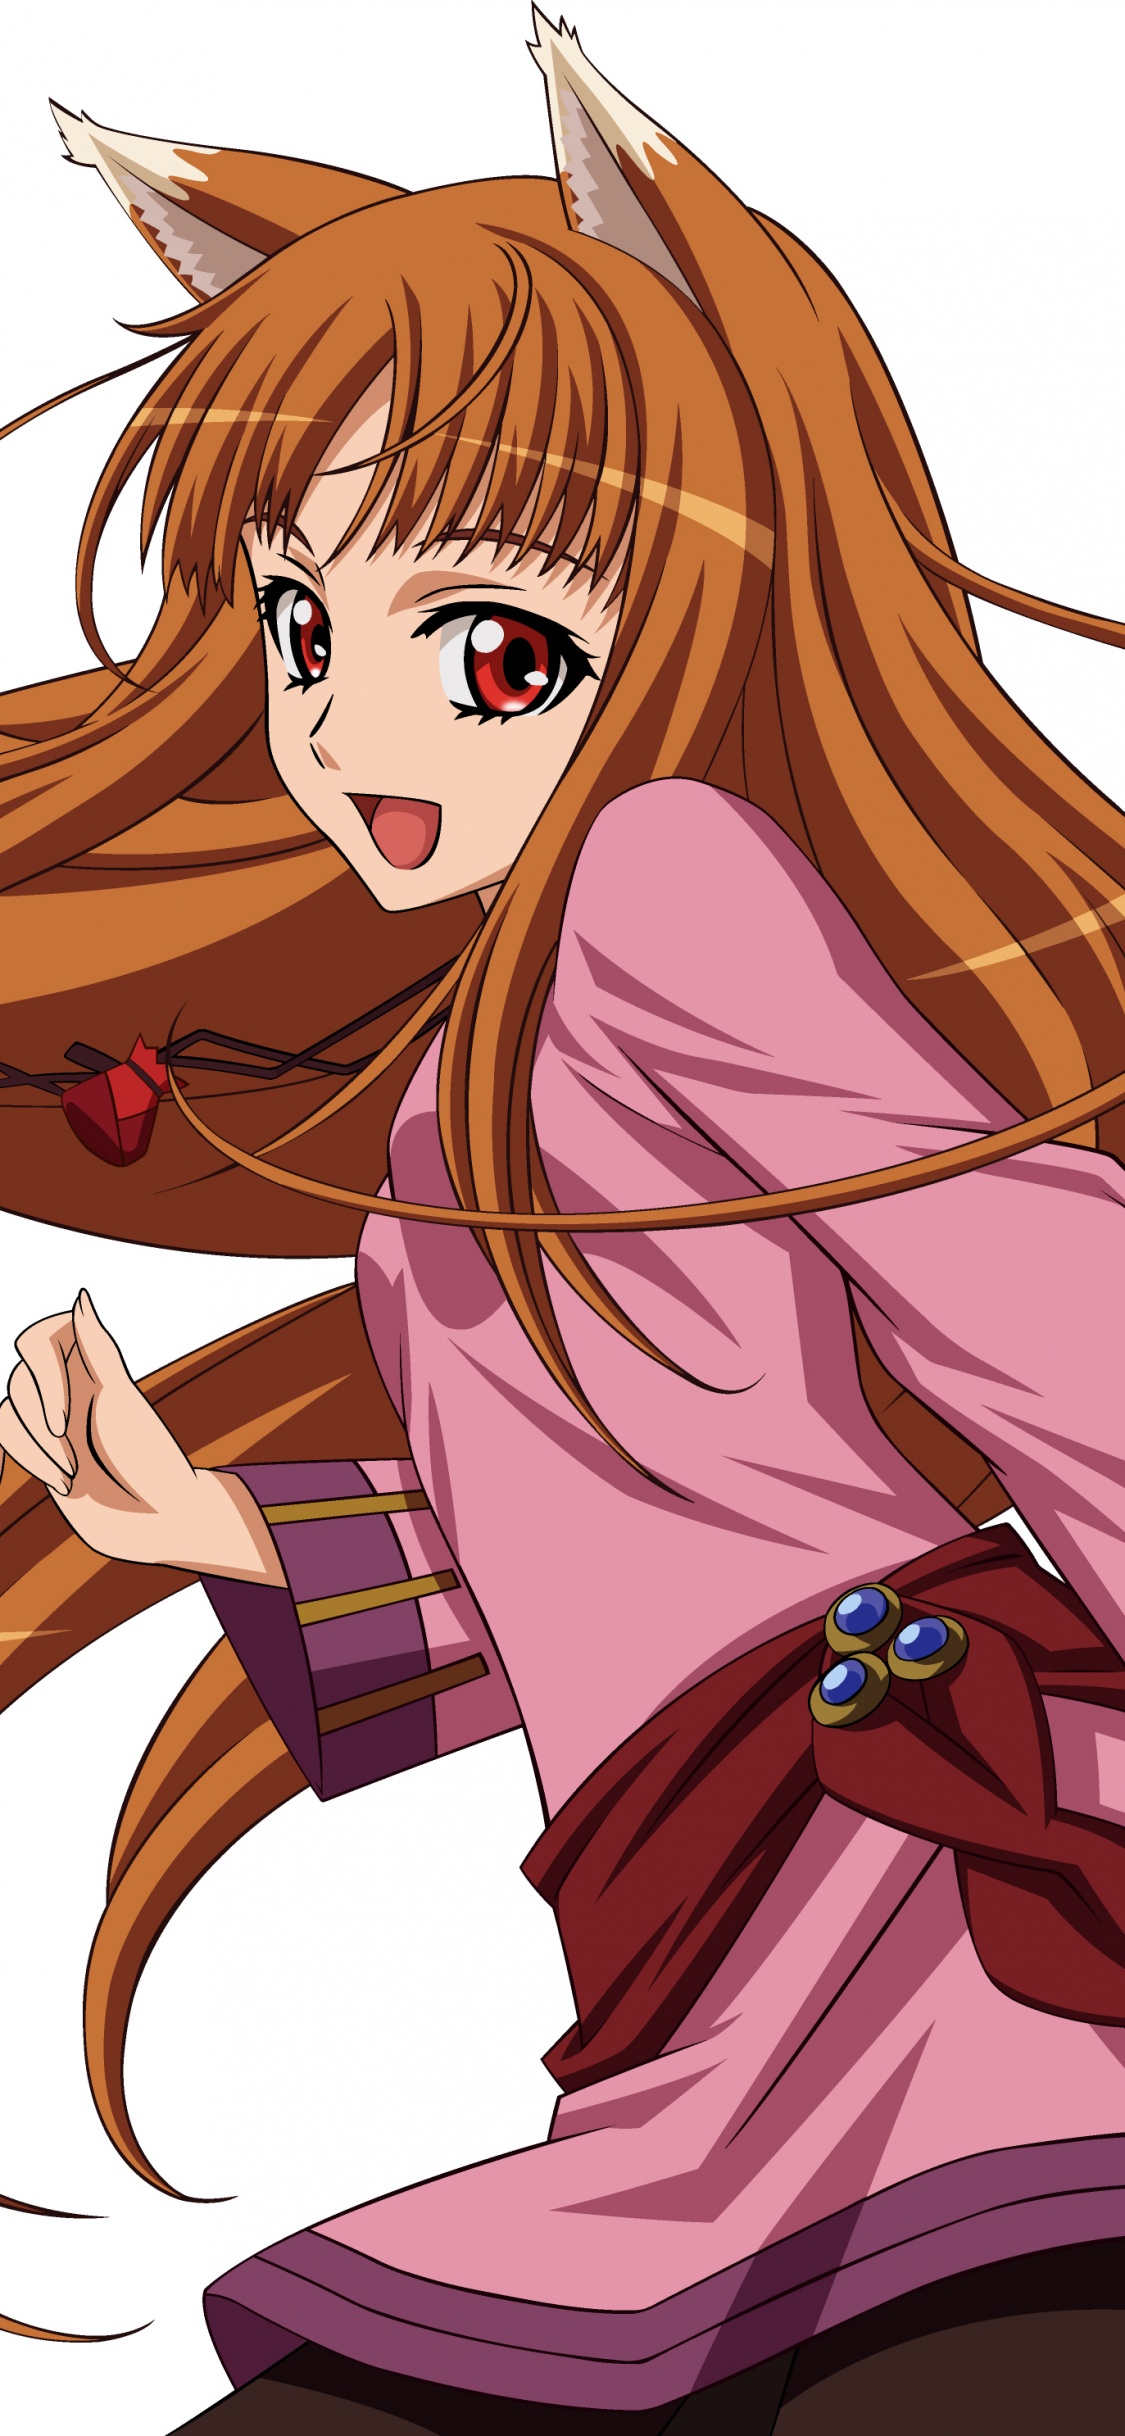 Chica de Pelo Rubio en Vestido Rosa Personaje de Anime. Wallpaper in 1125x2436 Resolution